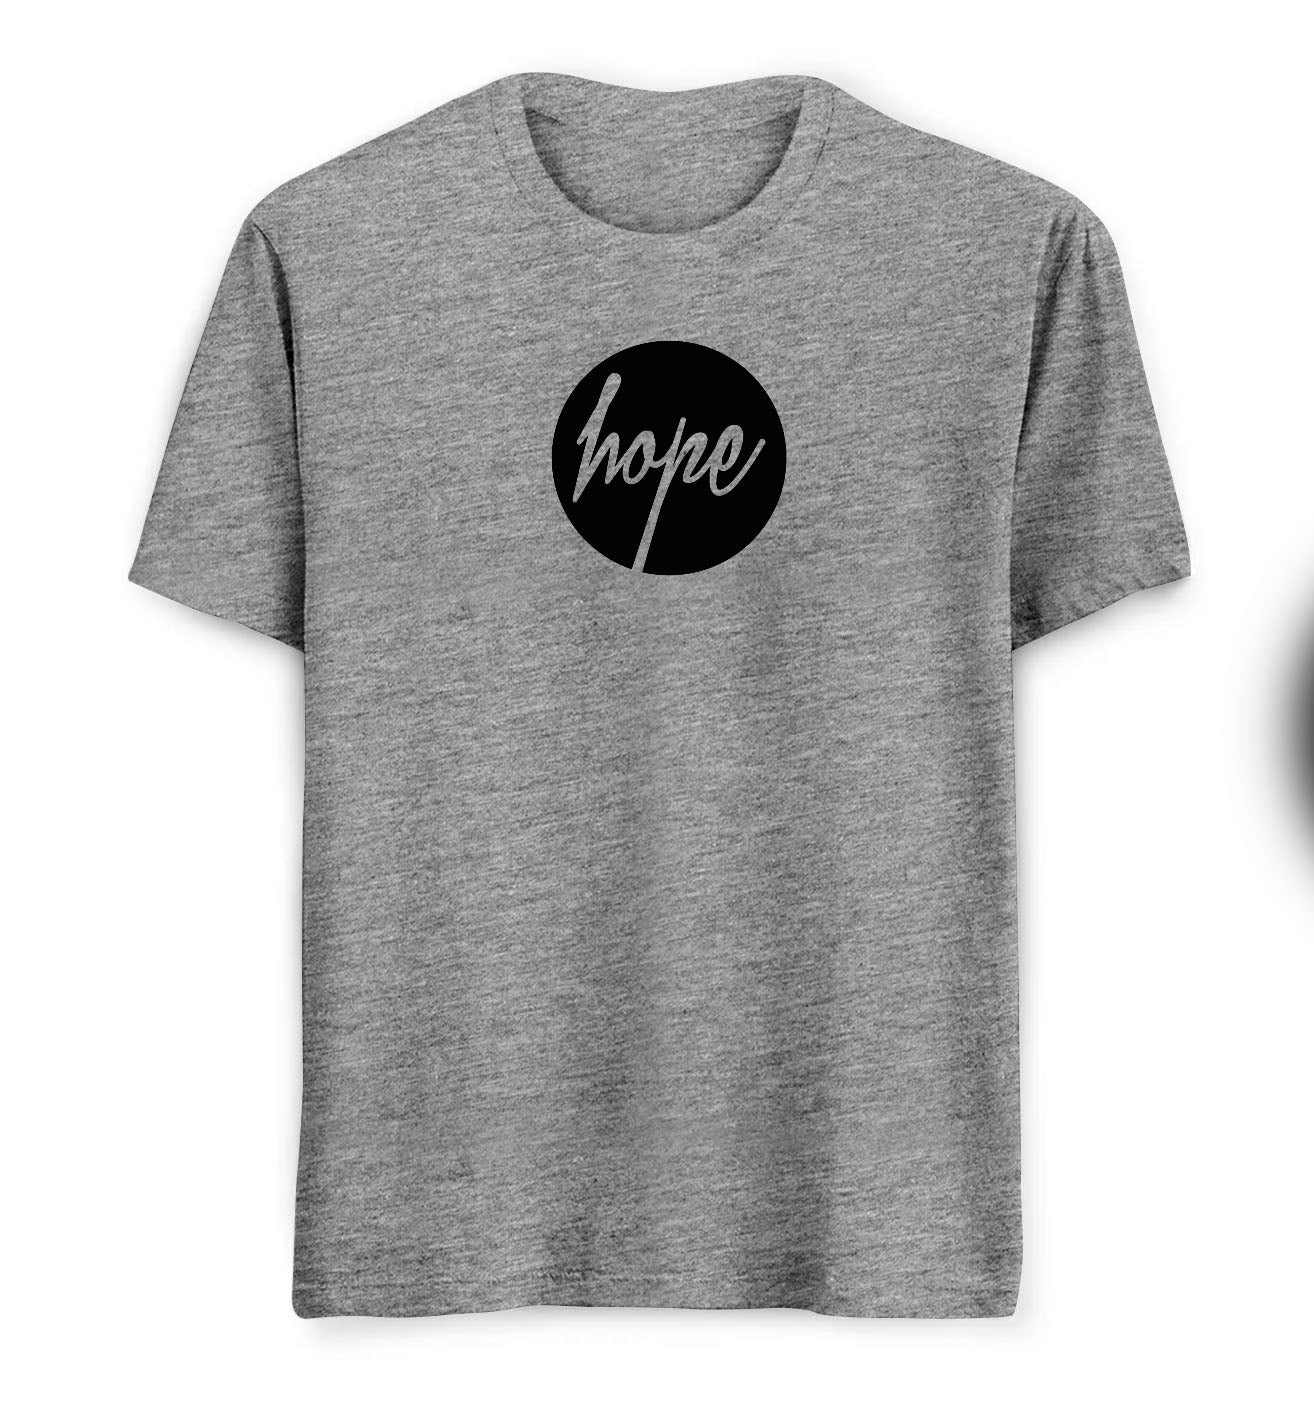 Hope Tees/ TShirts